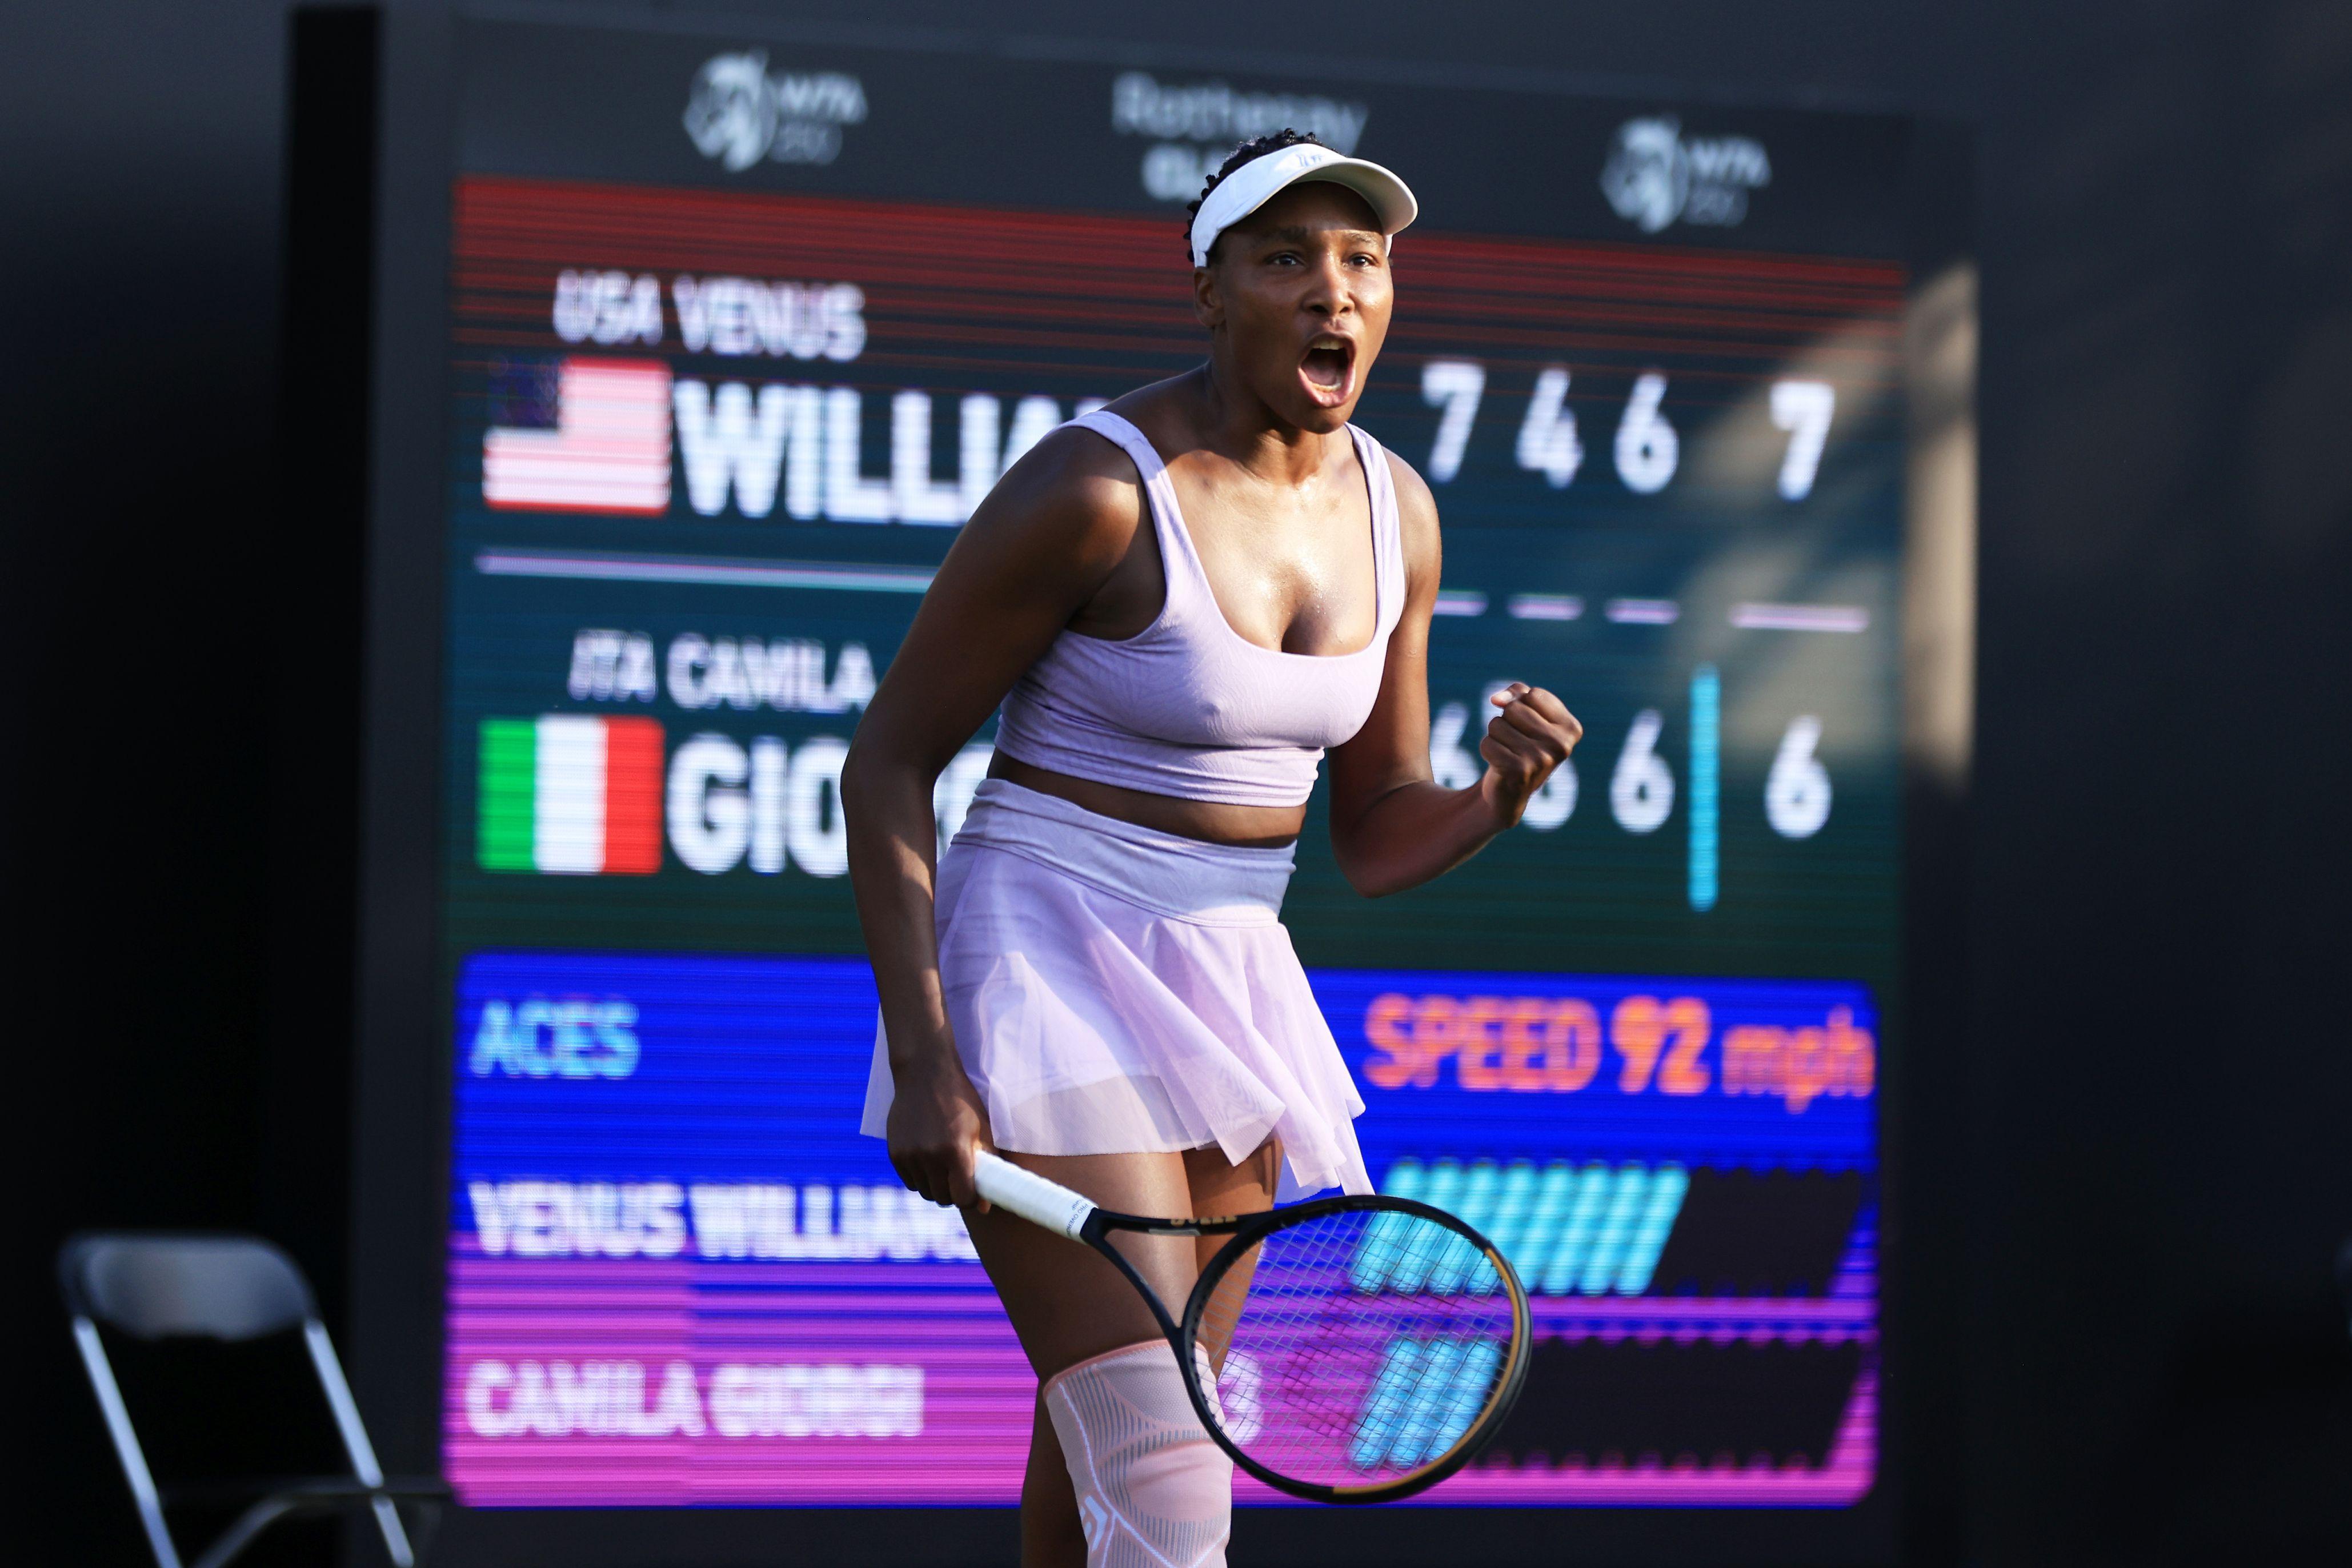 Venus Williams overcomes Italy's Camila Giorgi in explosive